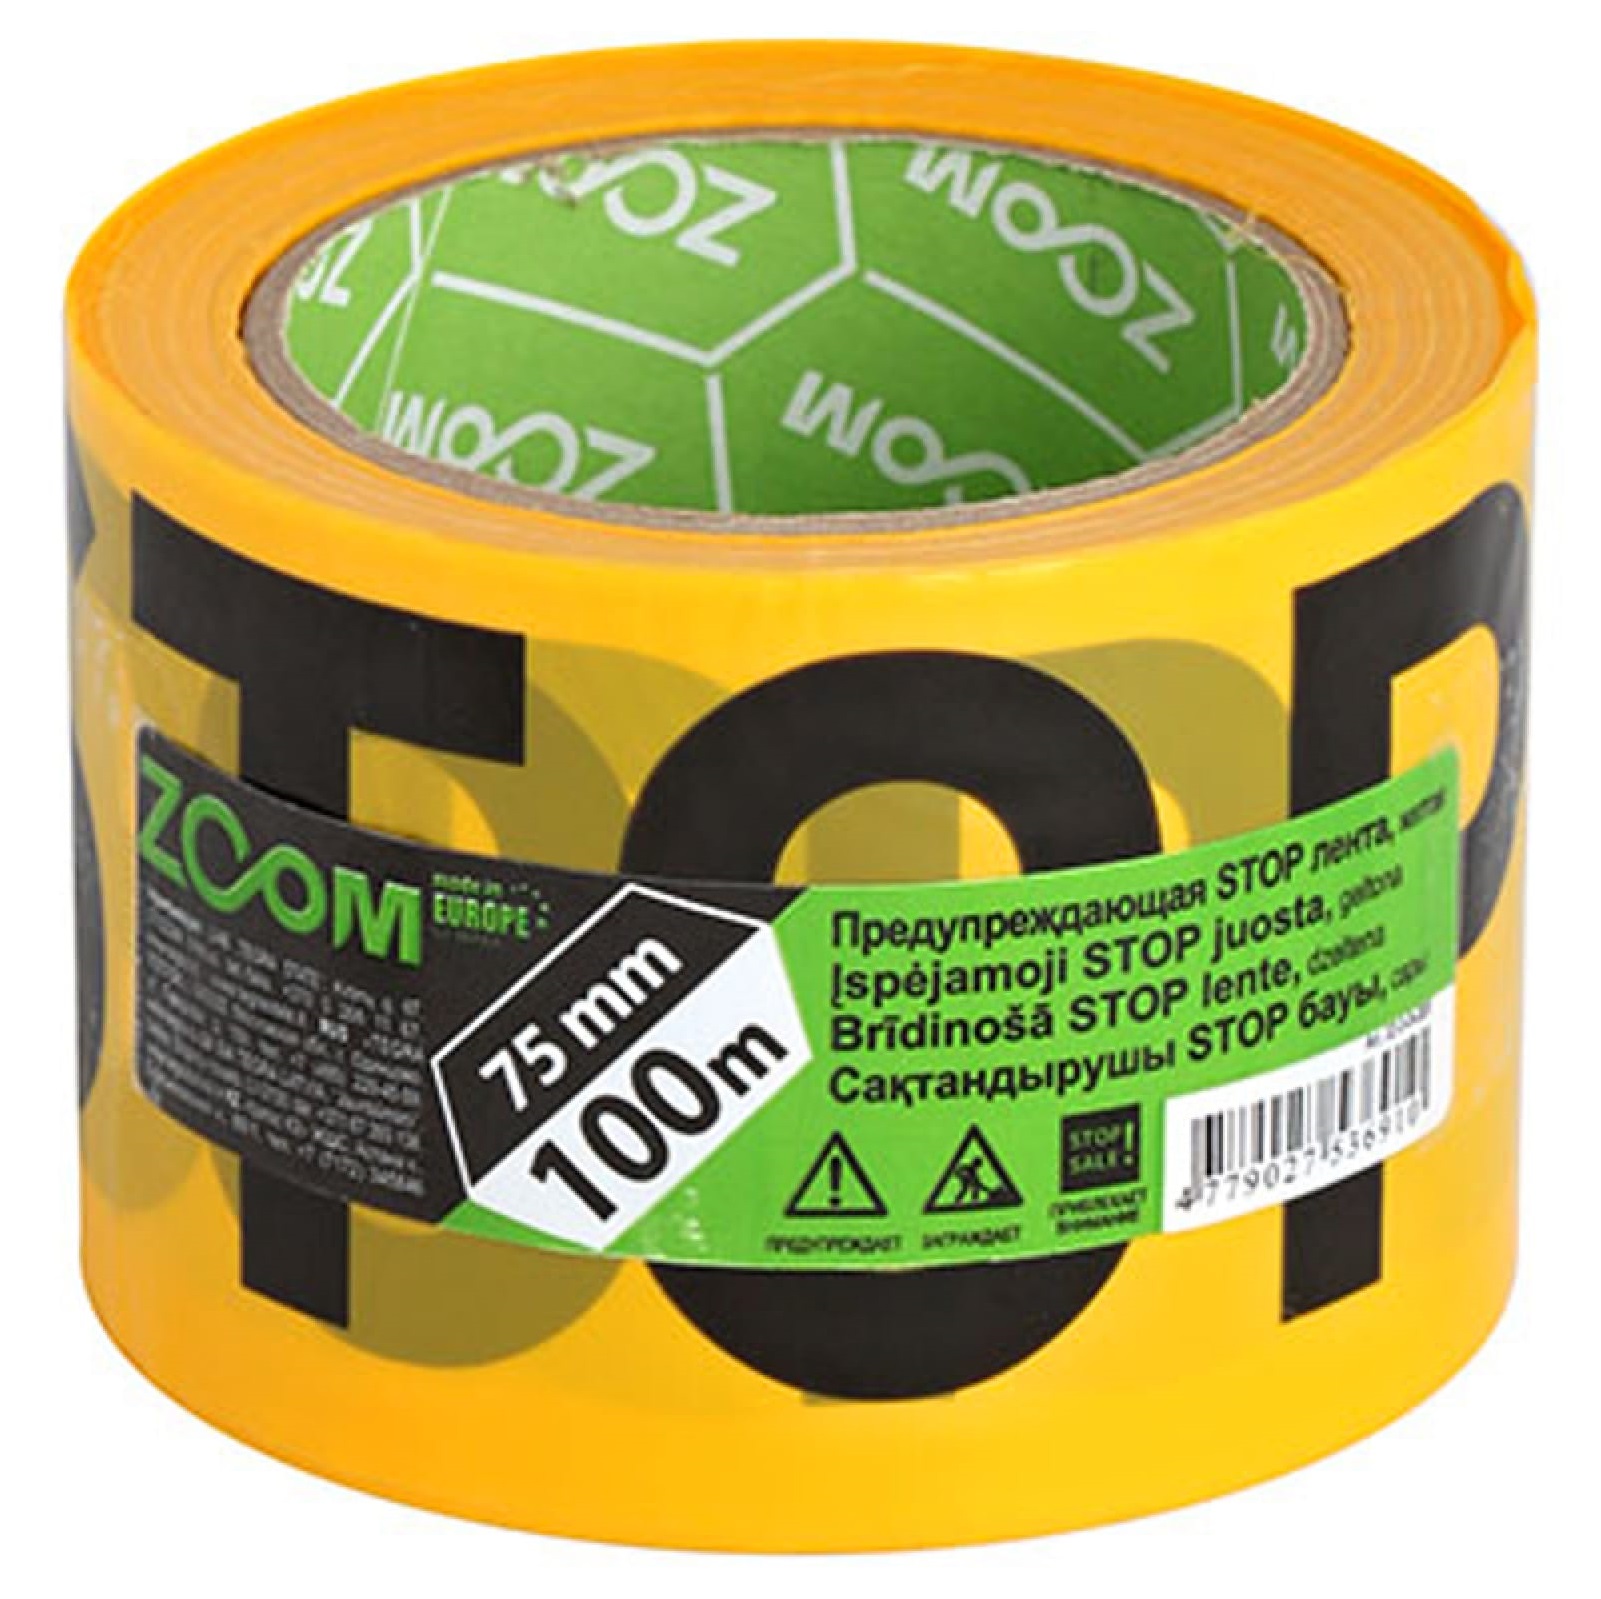 Предупреждающая лента Zoom строй stop 75 мм x 100 м желтая лента аллюминиевая клейкая zoom строй 72мм x 45м